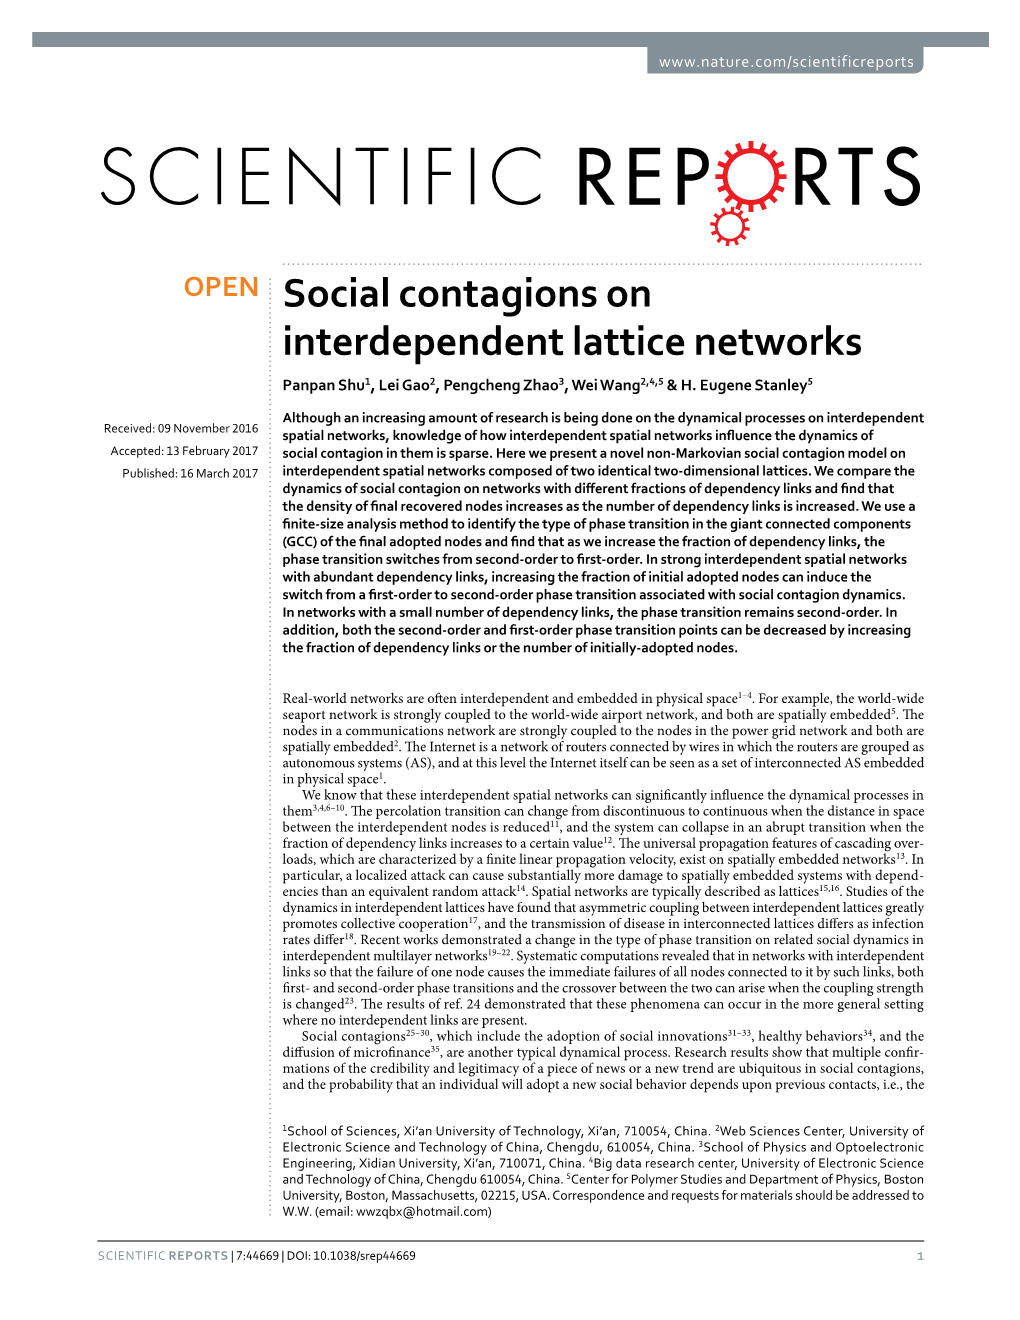 Social Contagions on Interdependent Lattice Networks Panpan Shu1, Lei Gao2, Pengcheng Zhao3, Wei Wang2,4,5 & H